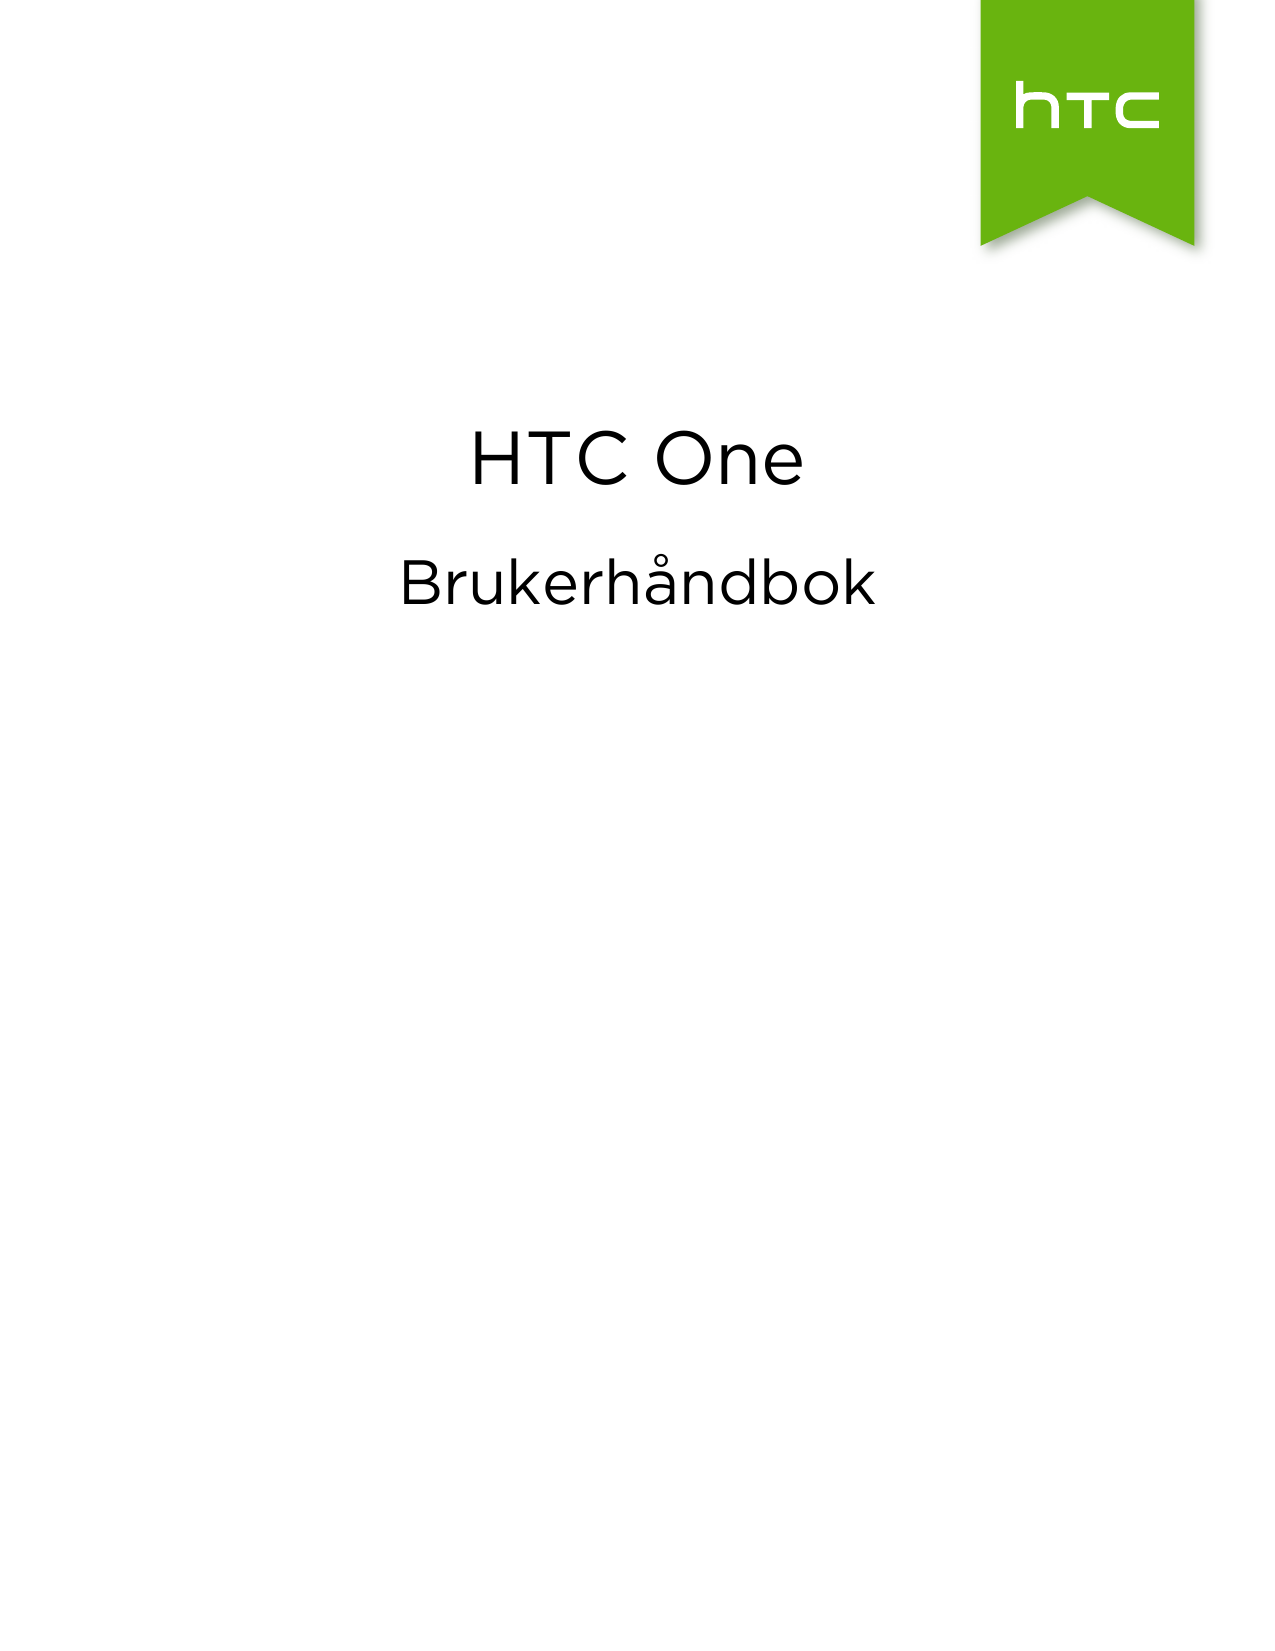 HTC OneBrukerhåndbok